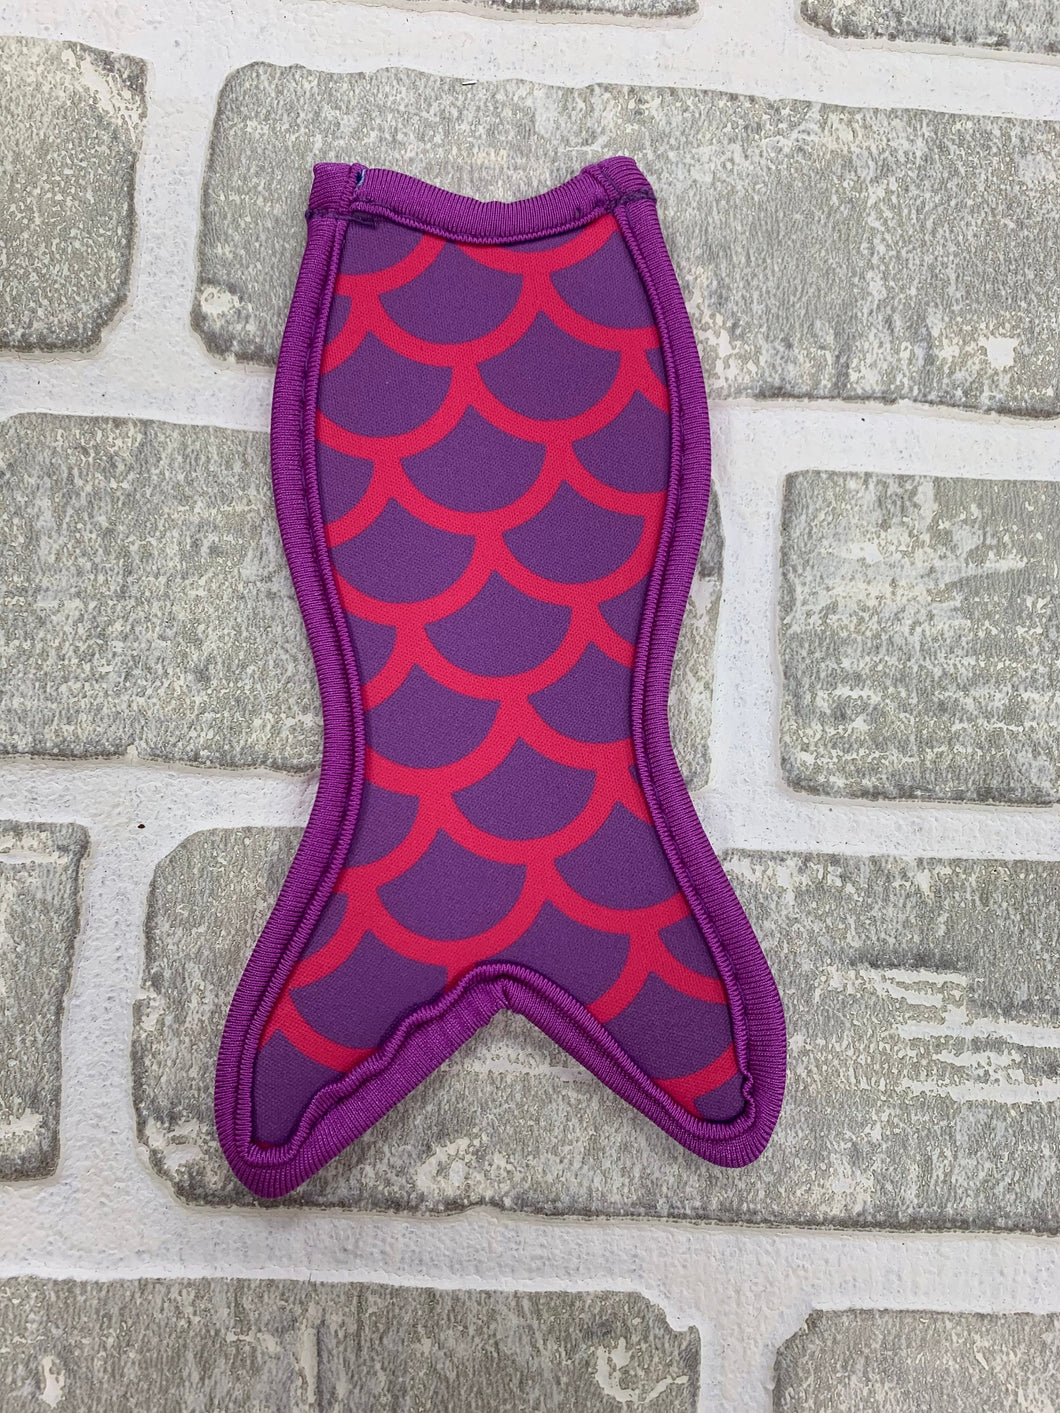 Purple and pink mermaid popsicle holder blanks